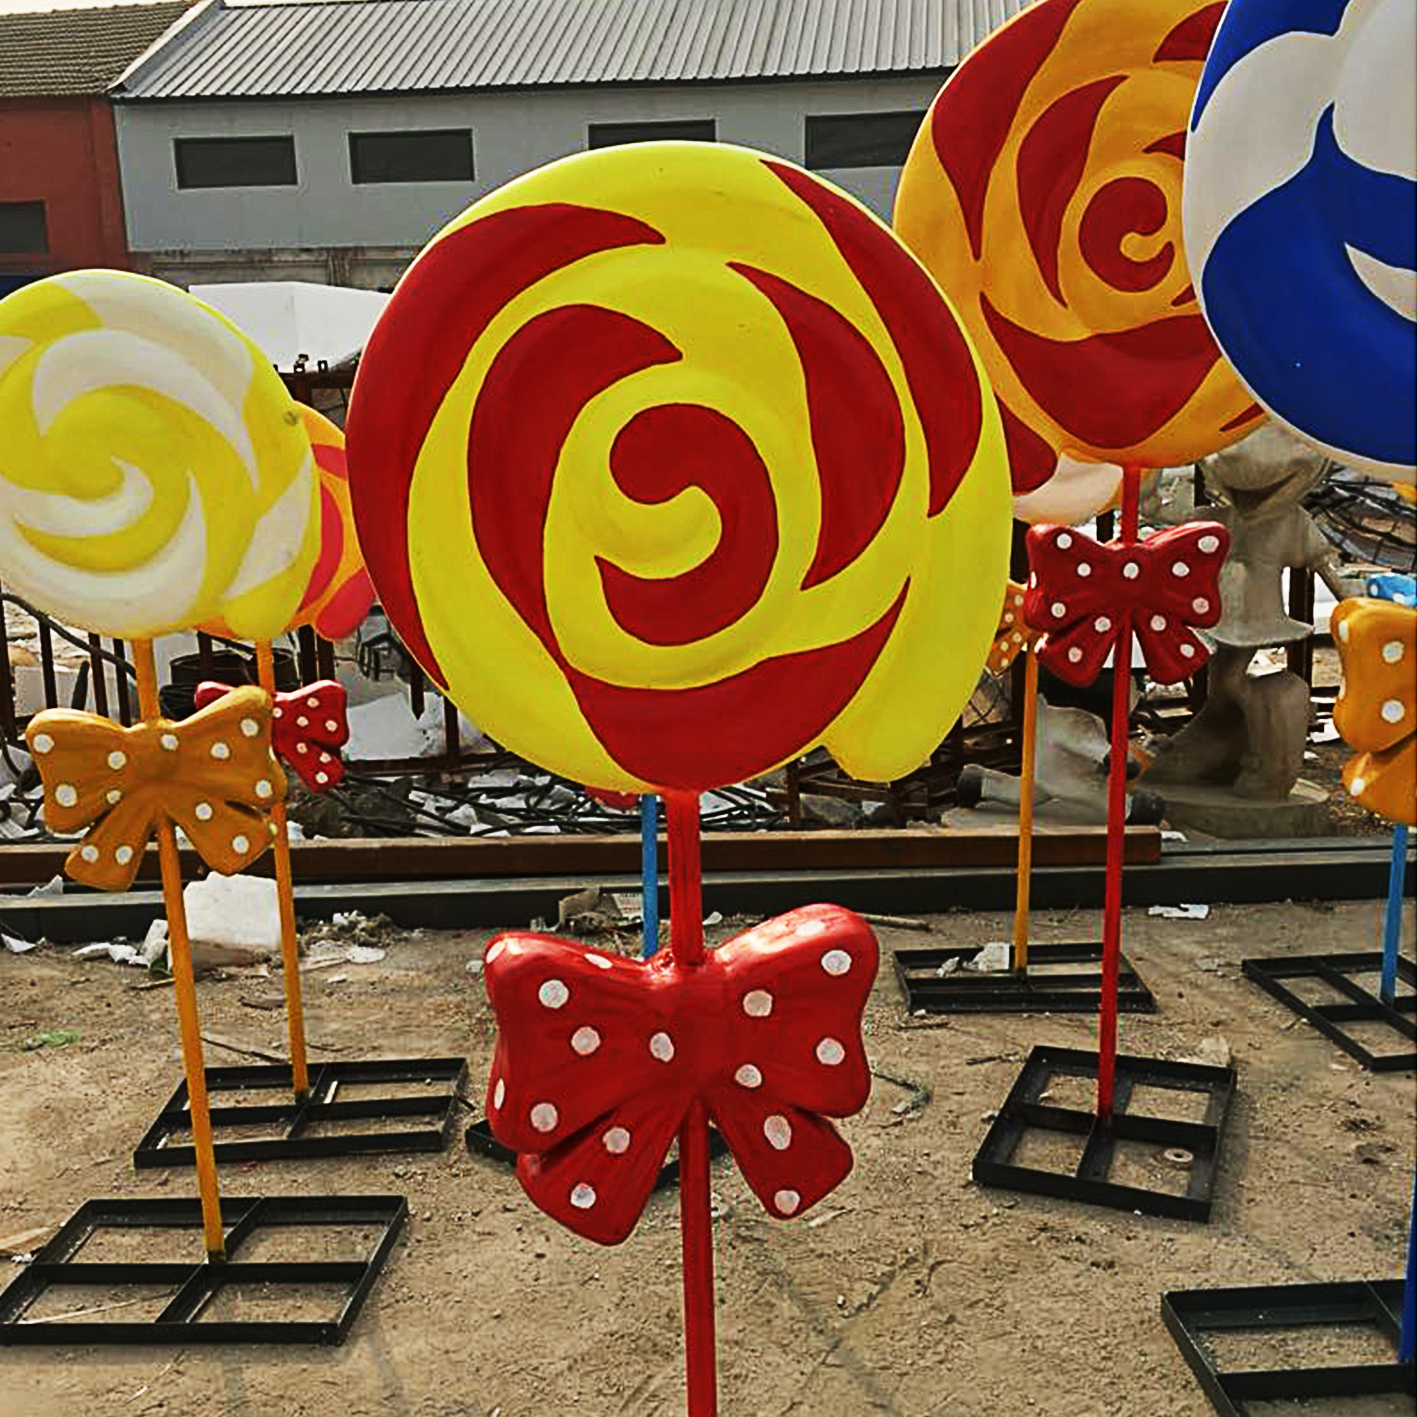 石家庄市气球艺术造型,稻草艺术造型厂家